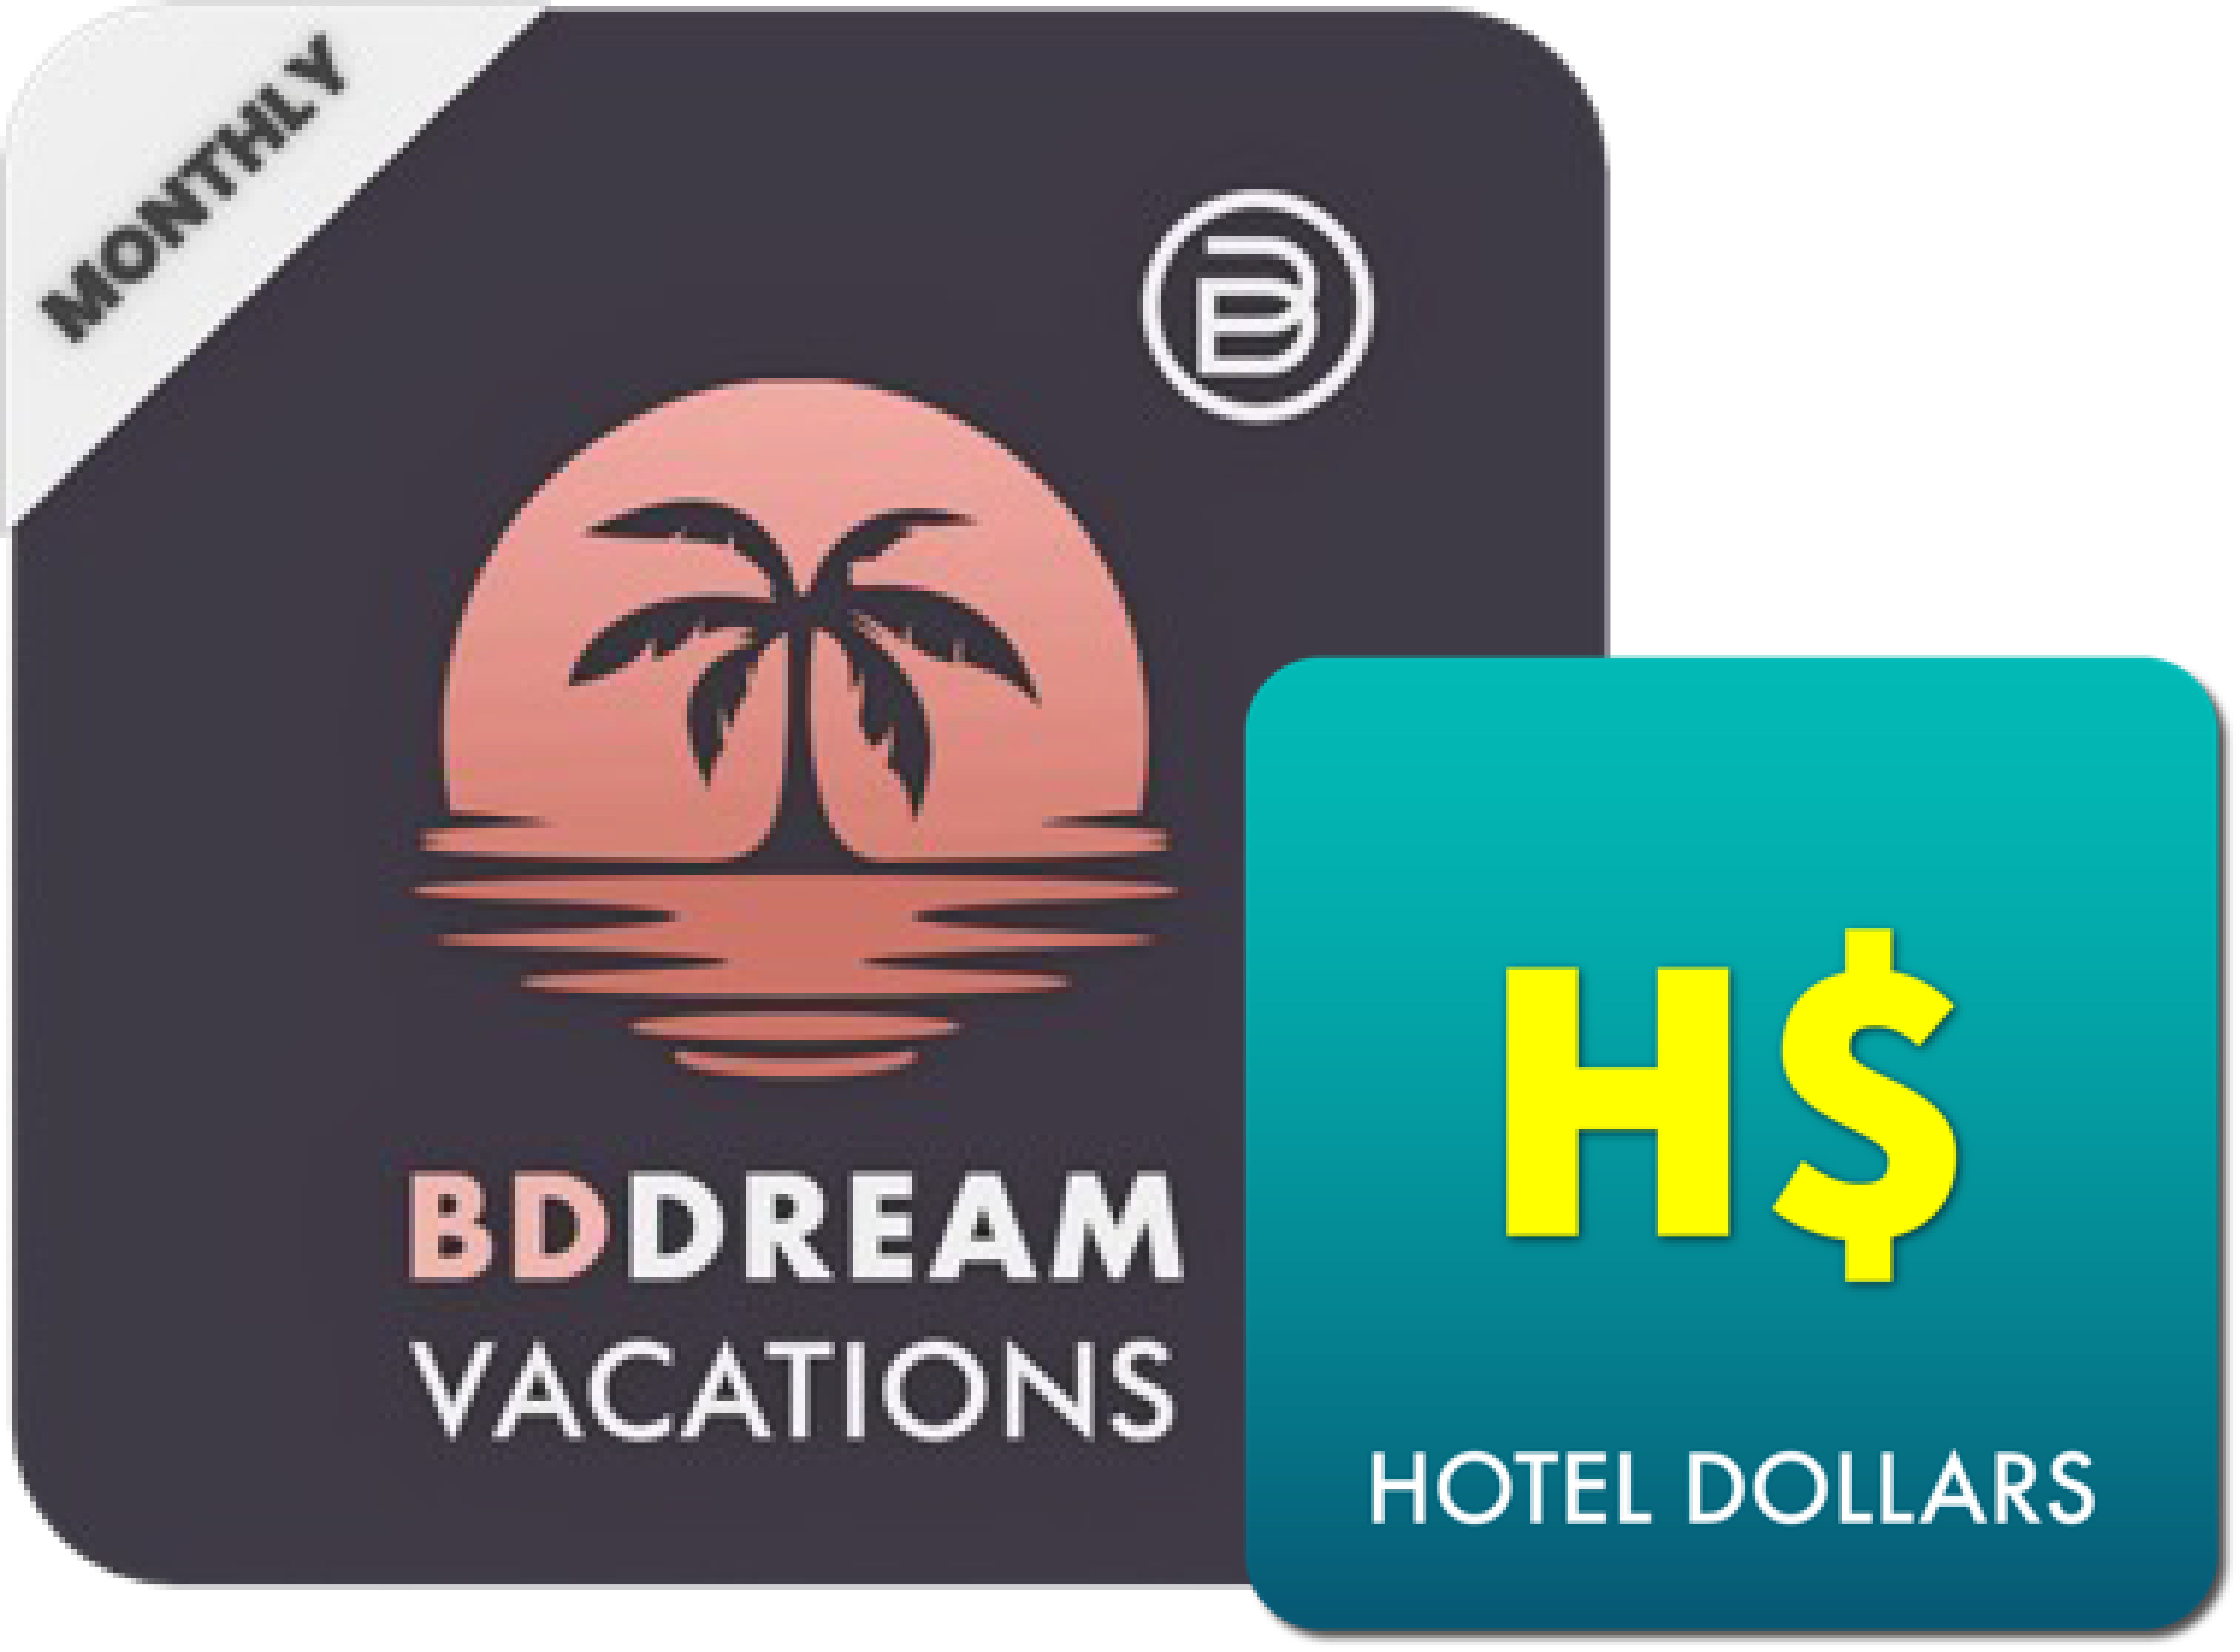 bddv-hotel-dollars